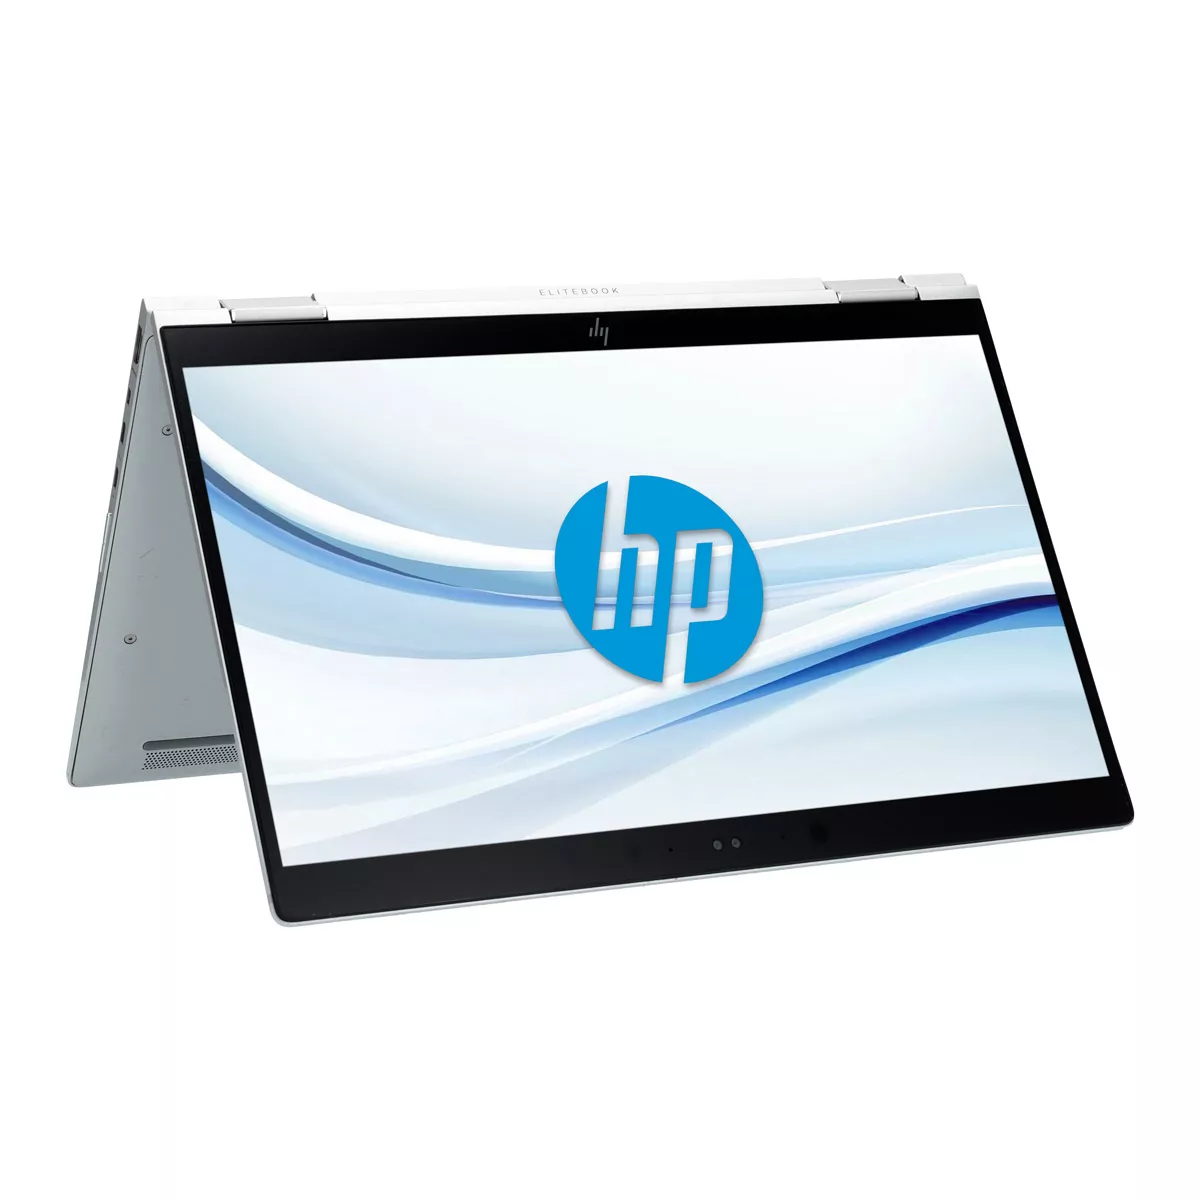 HP EliteBook x360 1030 G3 Core i7 8650U 16 GB 500 GB M.2 nVME SSD Touch Webcam A+